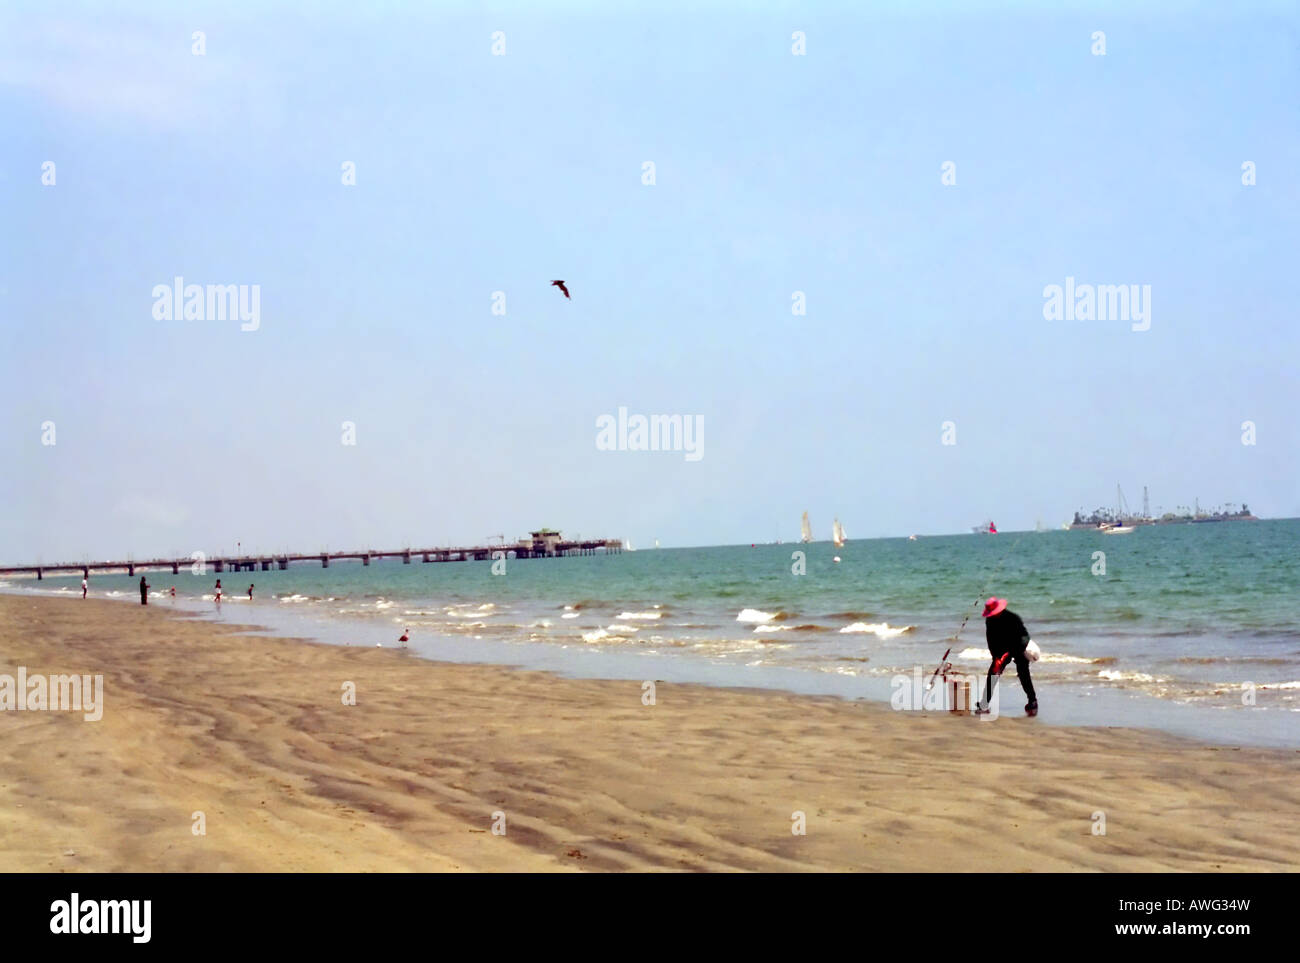 Ein malerisches Bild, das beispielhaft für einen gemütlichen Tag am Strand. Nur du und "catch-Sand, Surfen, Sonne und warten". Stockfoto